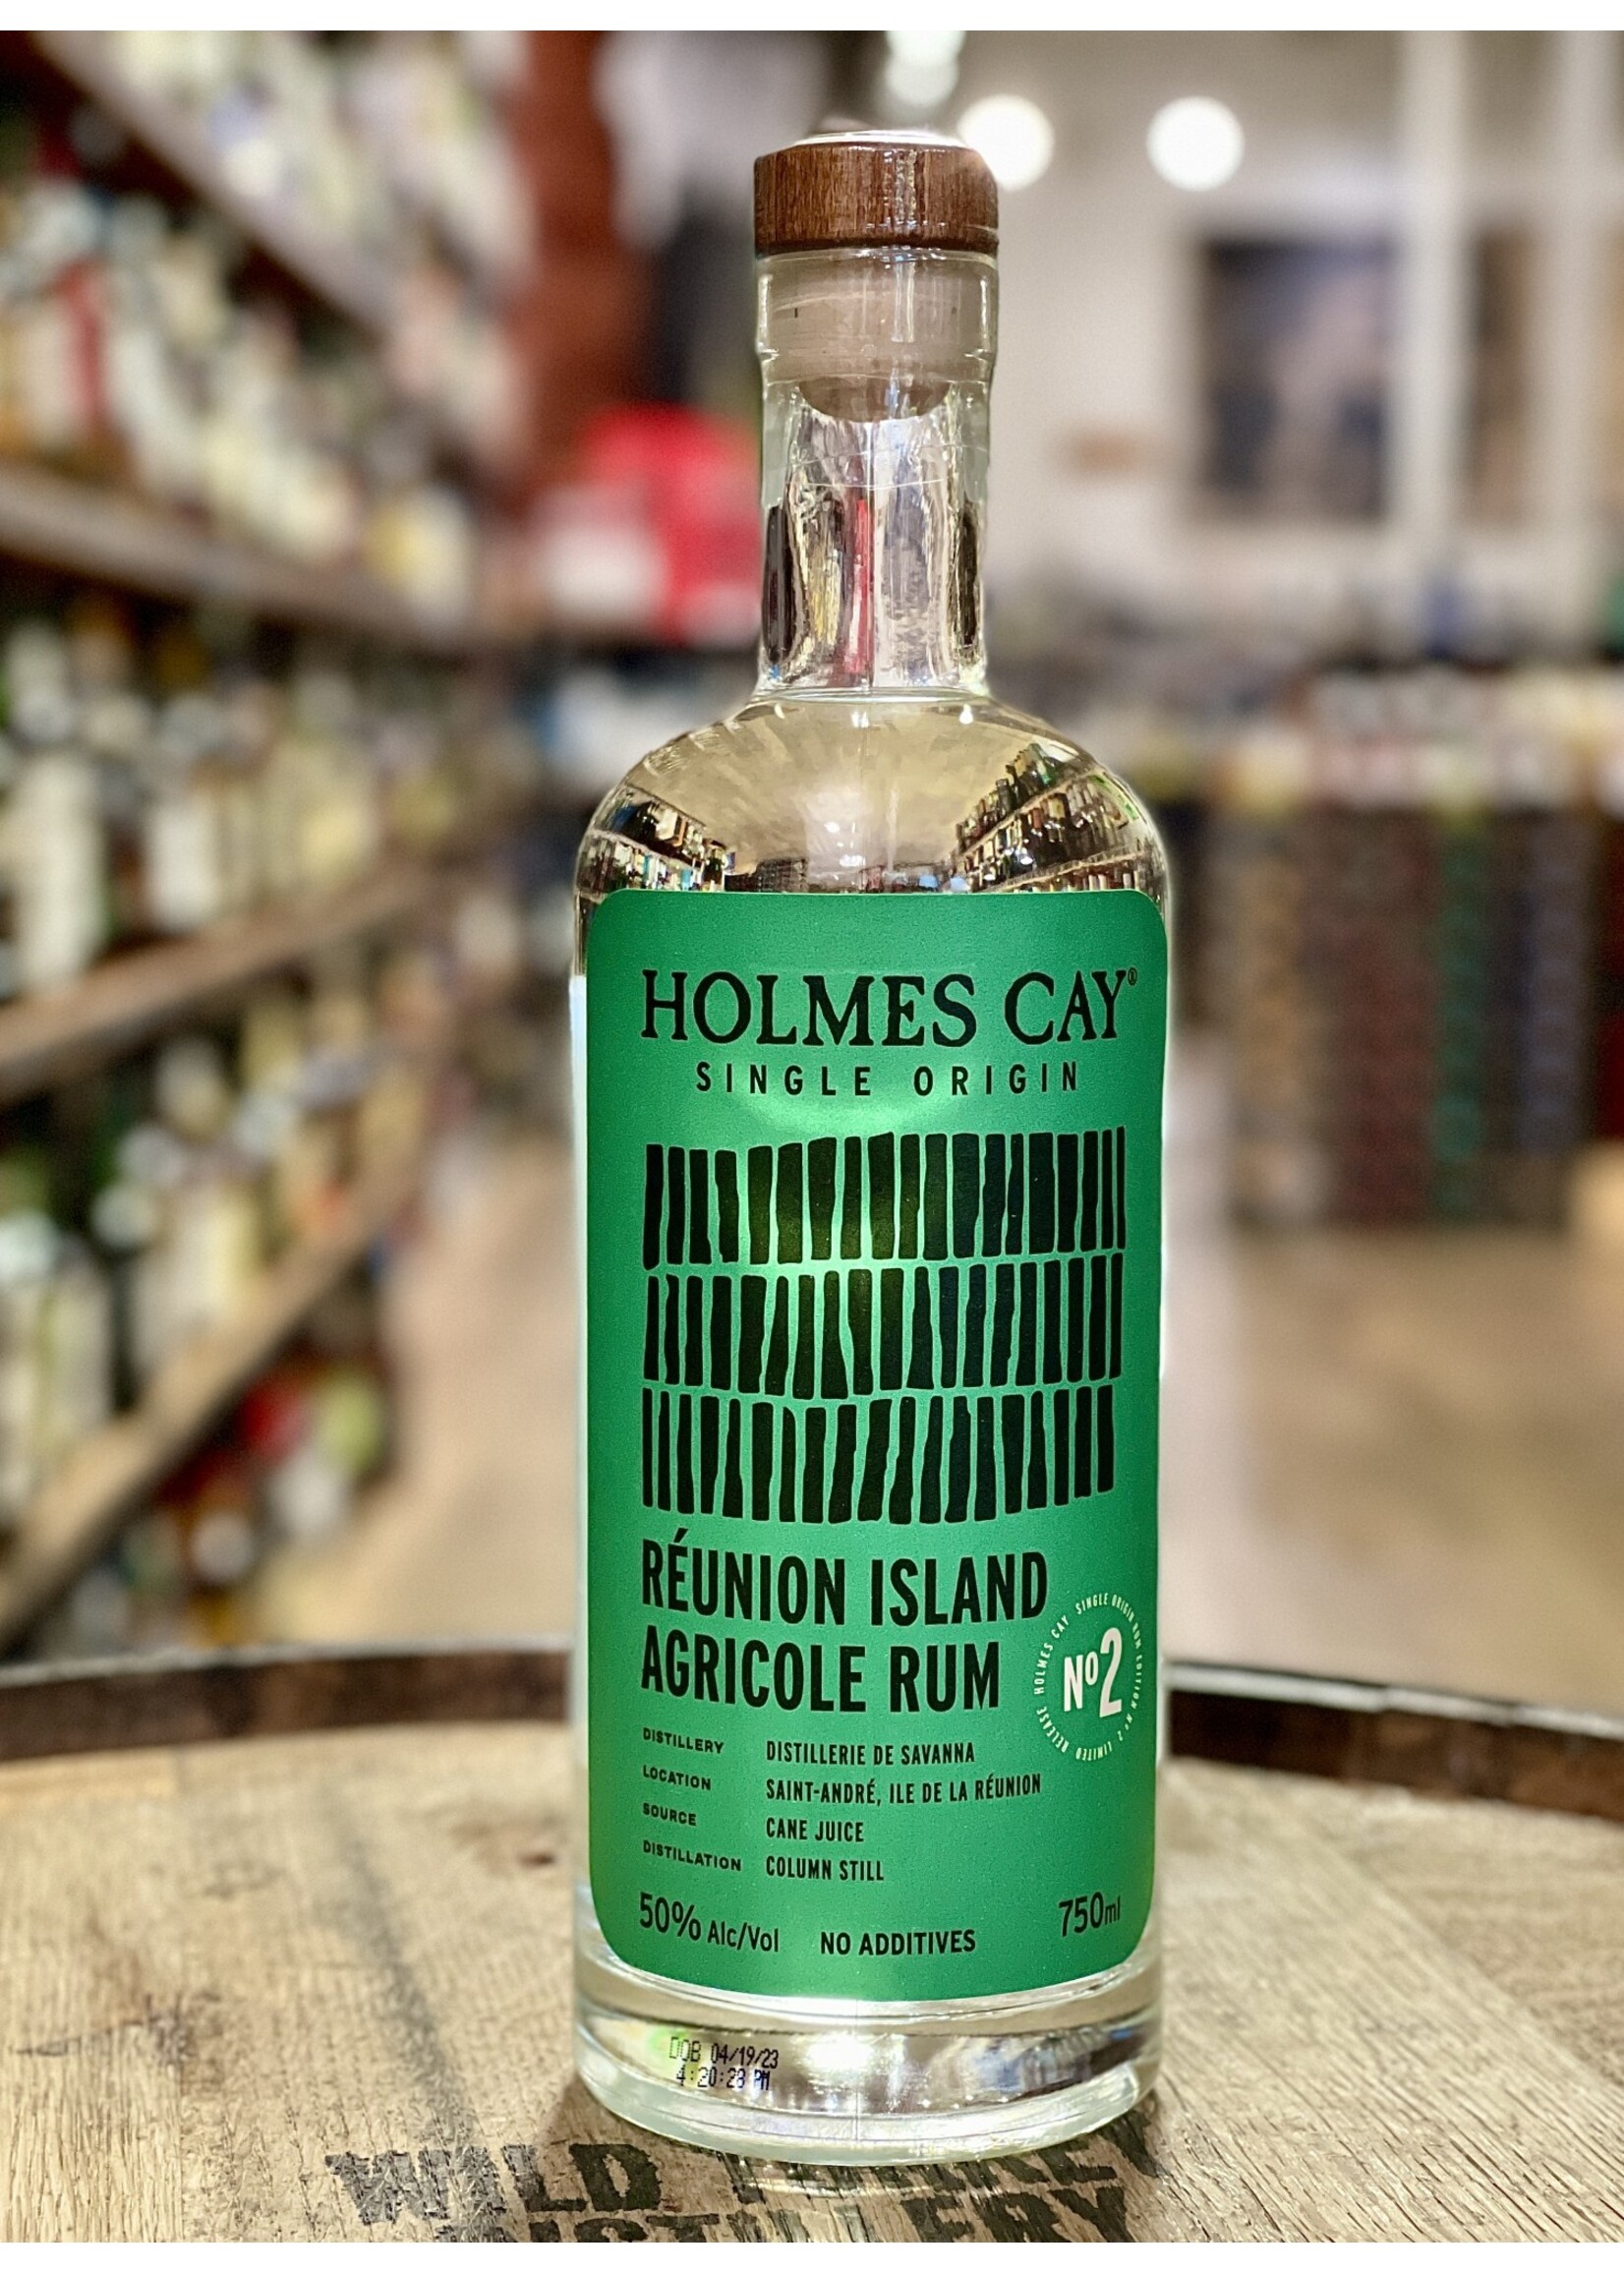 Holmes Cay Holmes Cay / Reunion Island Agricole Rum Single Origin Edition 50% abv / 750mL